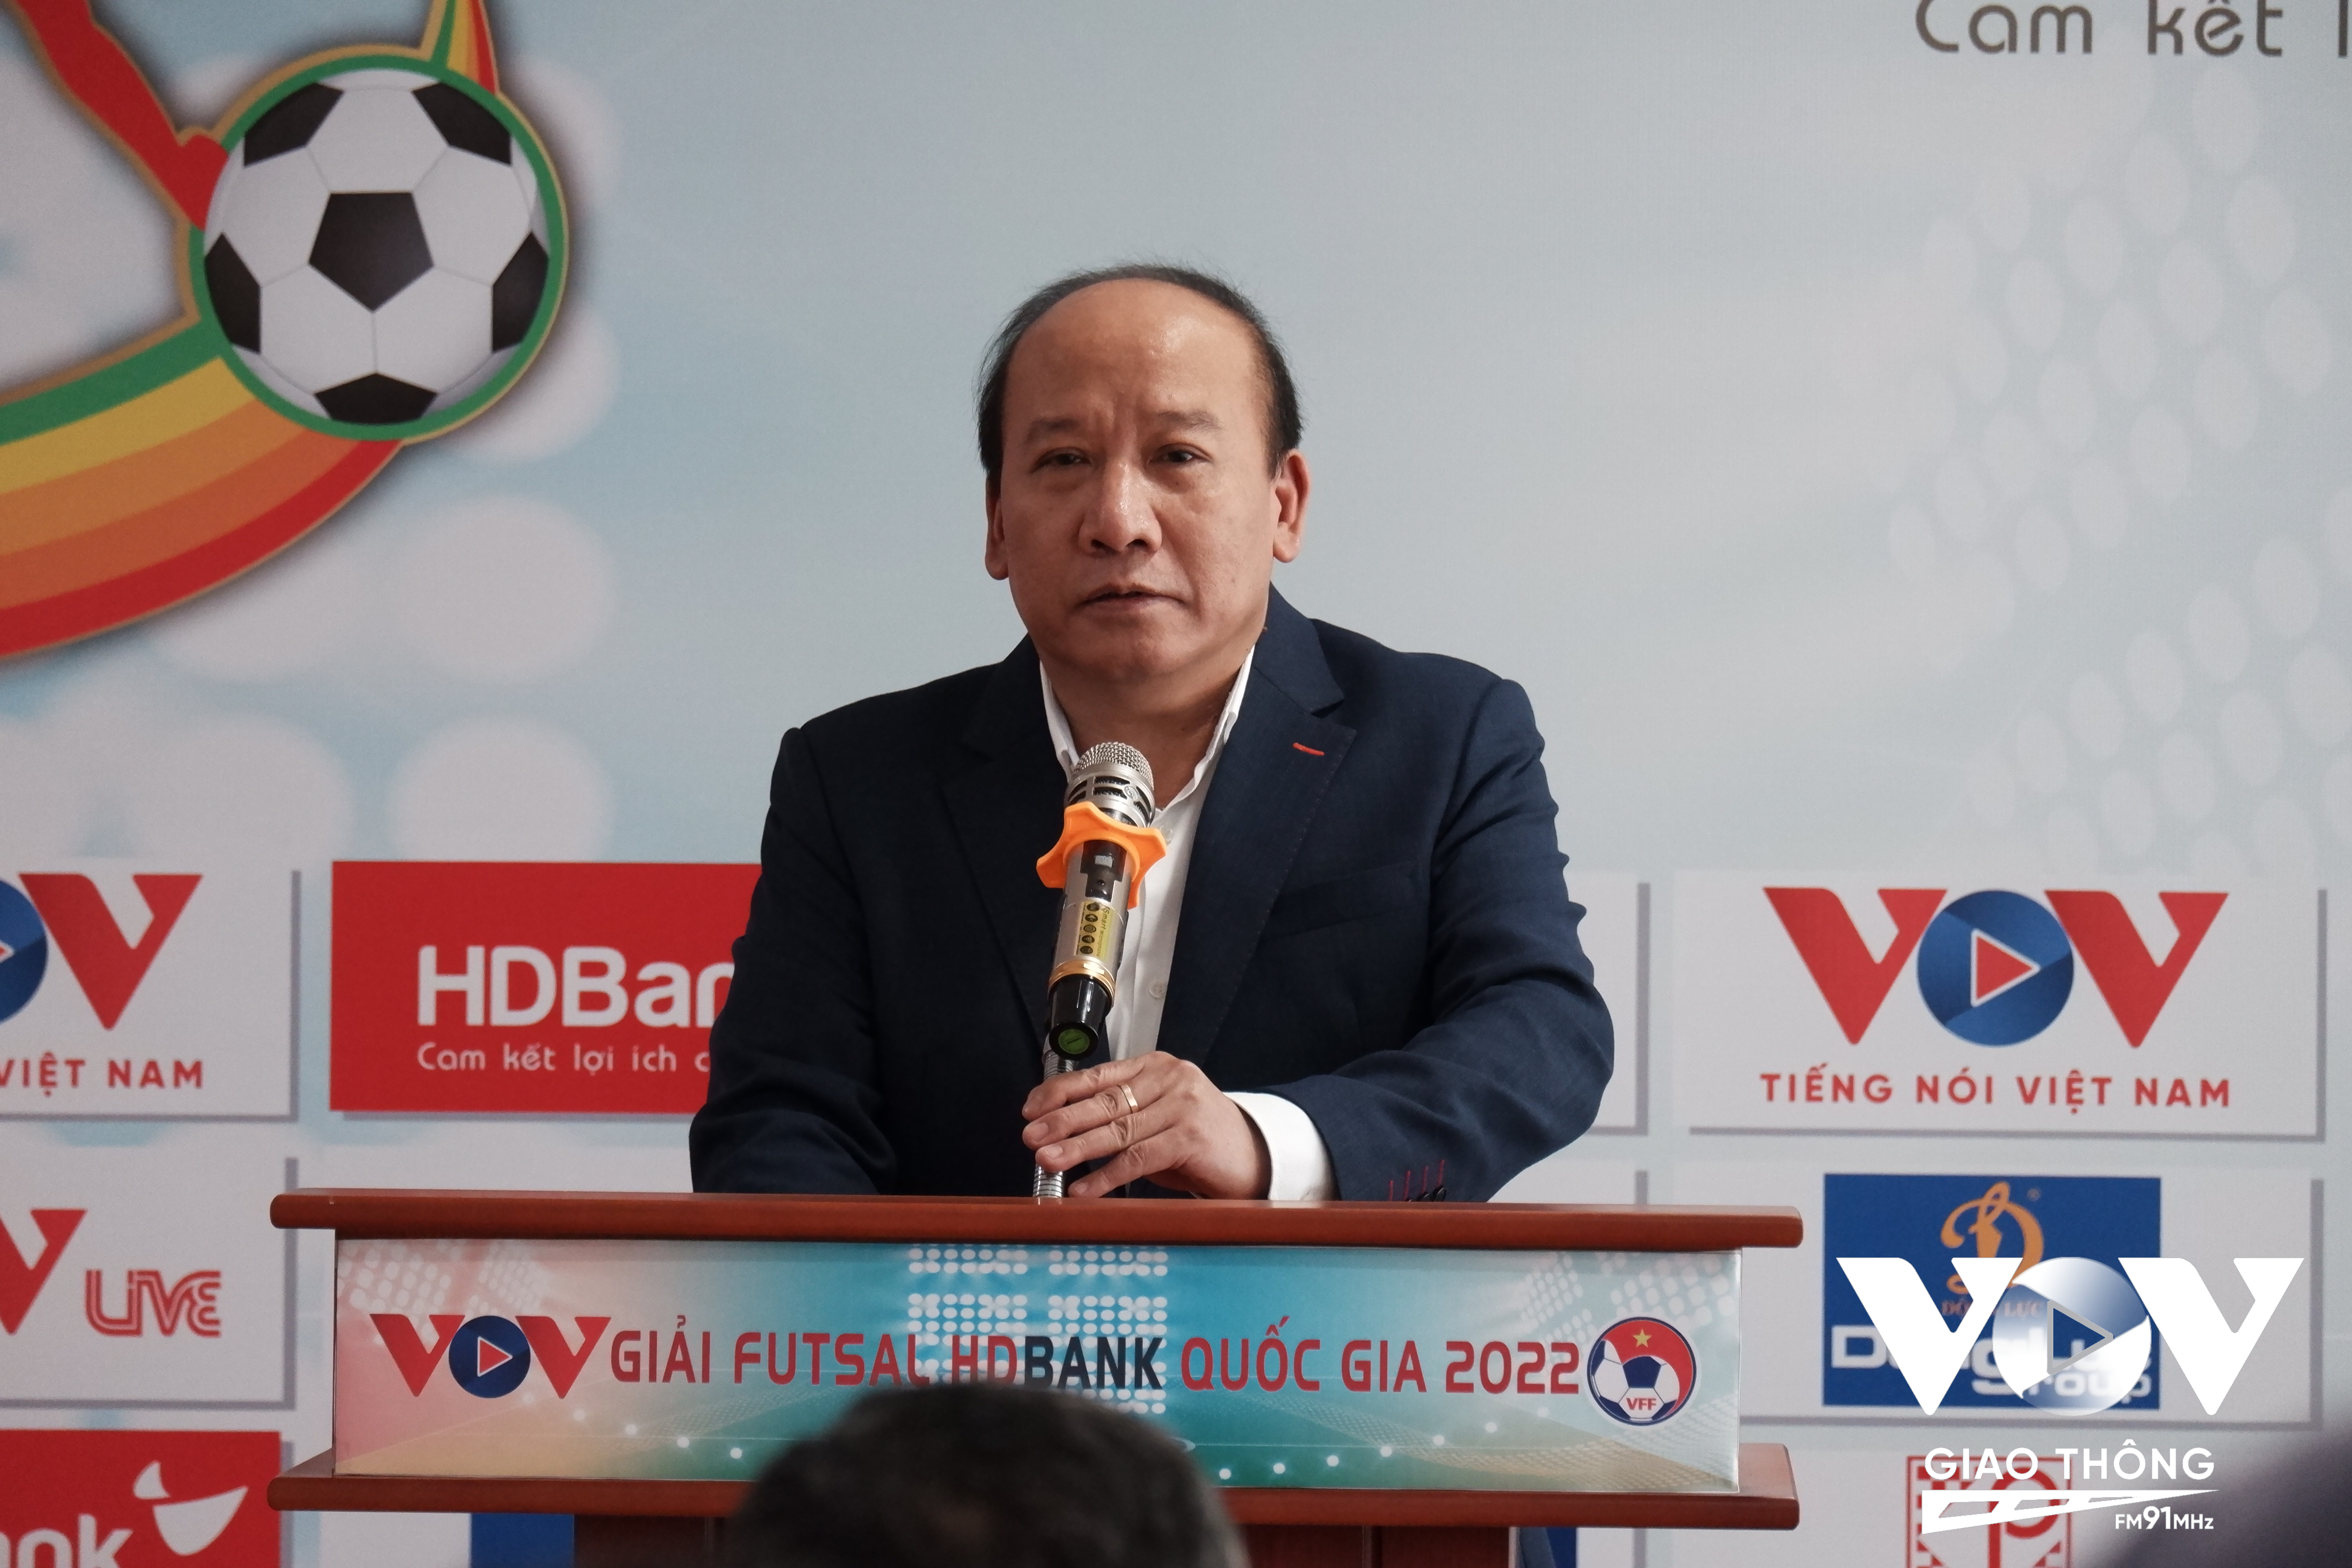 Ông Trần Minh Hùng – Phó Tổng giám đốc Đài Tiếng nói Việt Nam VOV, đồng trưởng ban chỉ đạo mùa giải Futsal 2022.